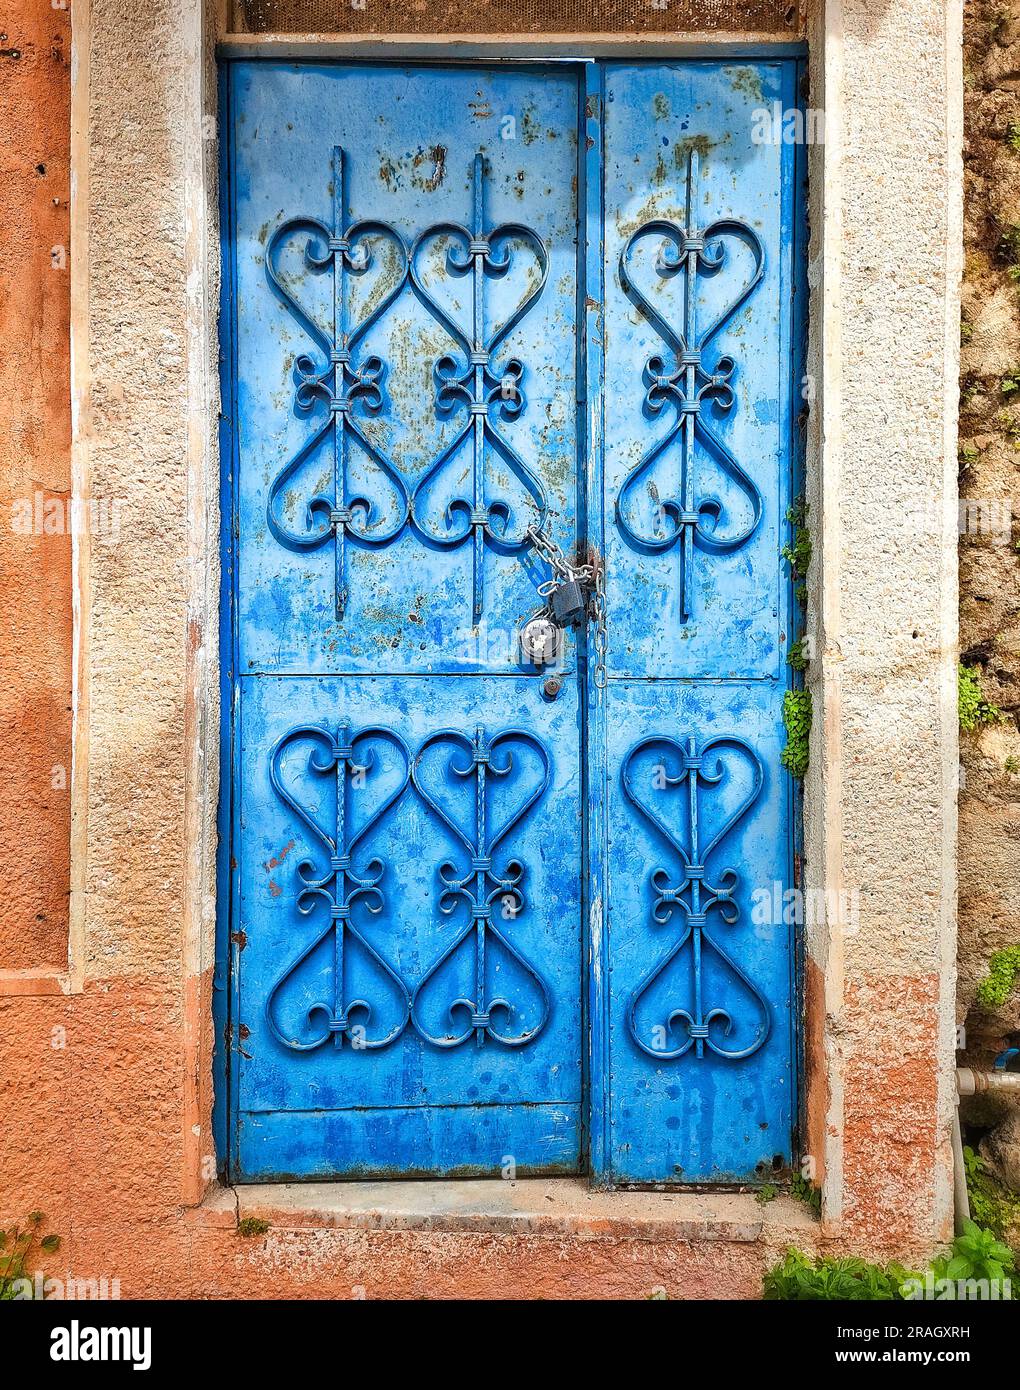 Porta anticata blu con forgiatura a motivi geometrici, chiusa con lucchetto, sullo sfondo della parete in pietra Foto Stock